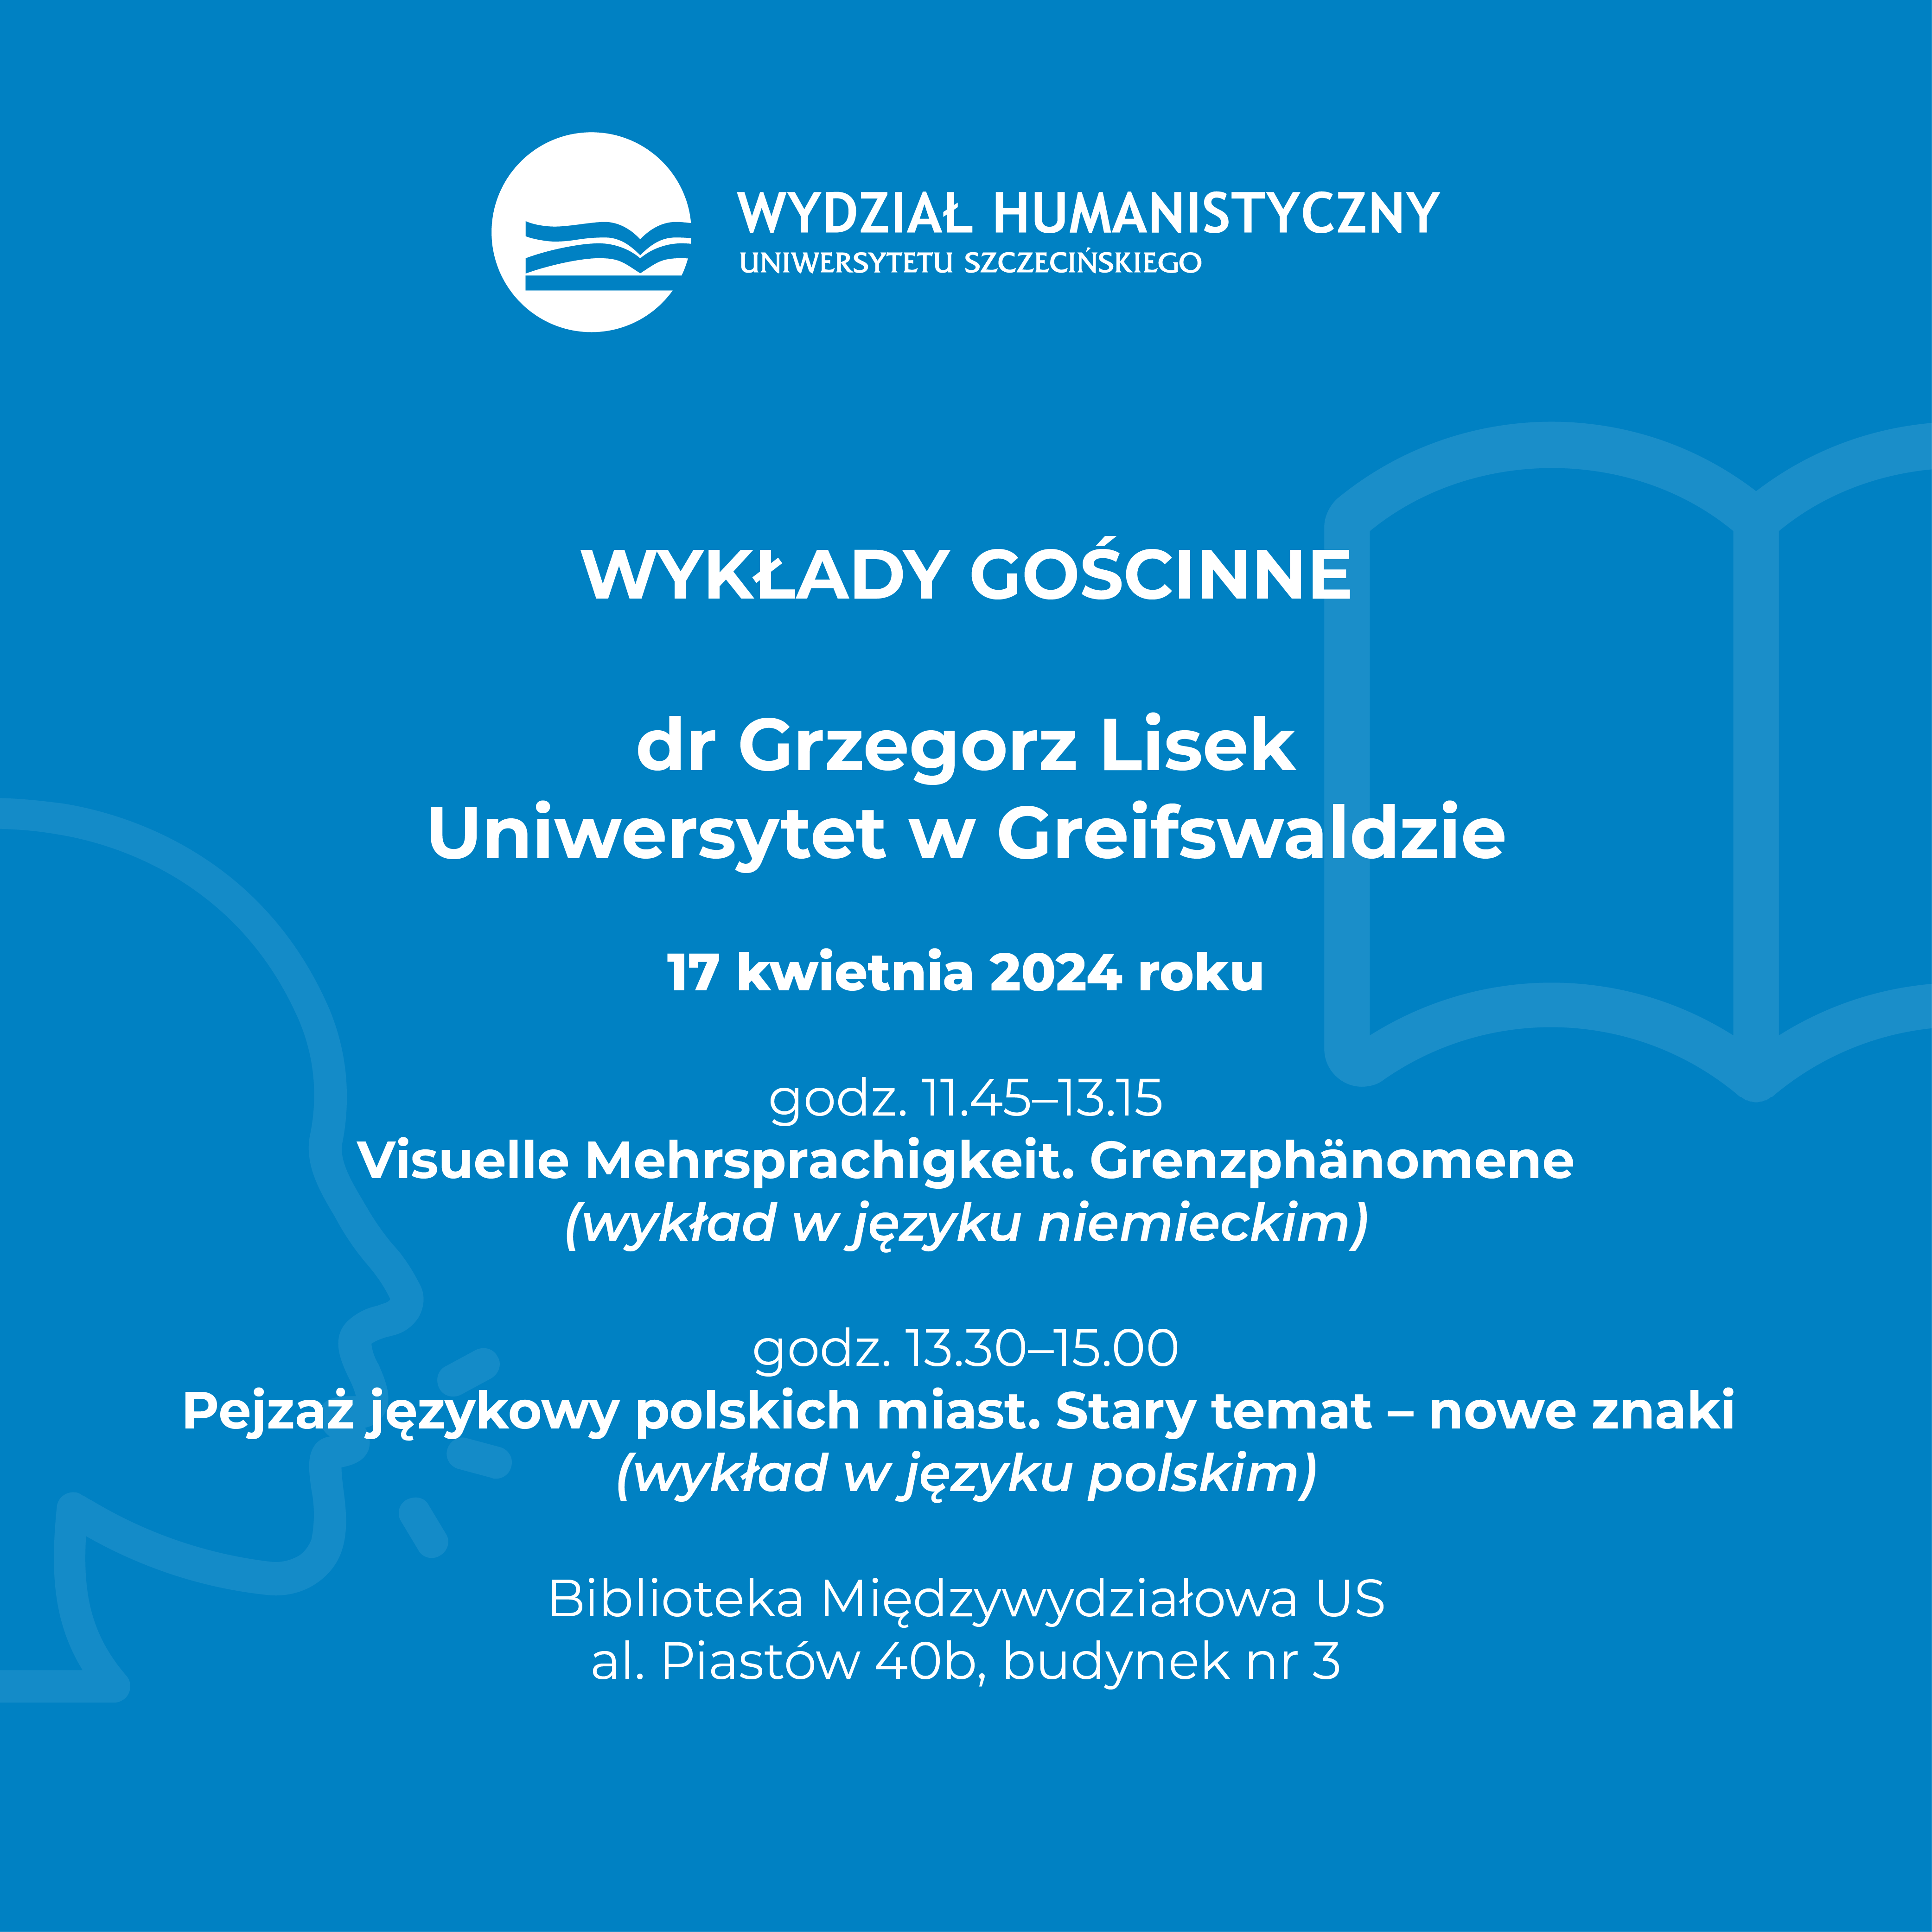 Zapraszamy na wykłady gościnne dr. Grzegorza Liska z Uniwersytetu w Greifswaldzie